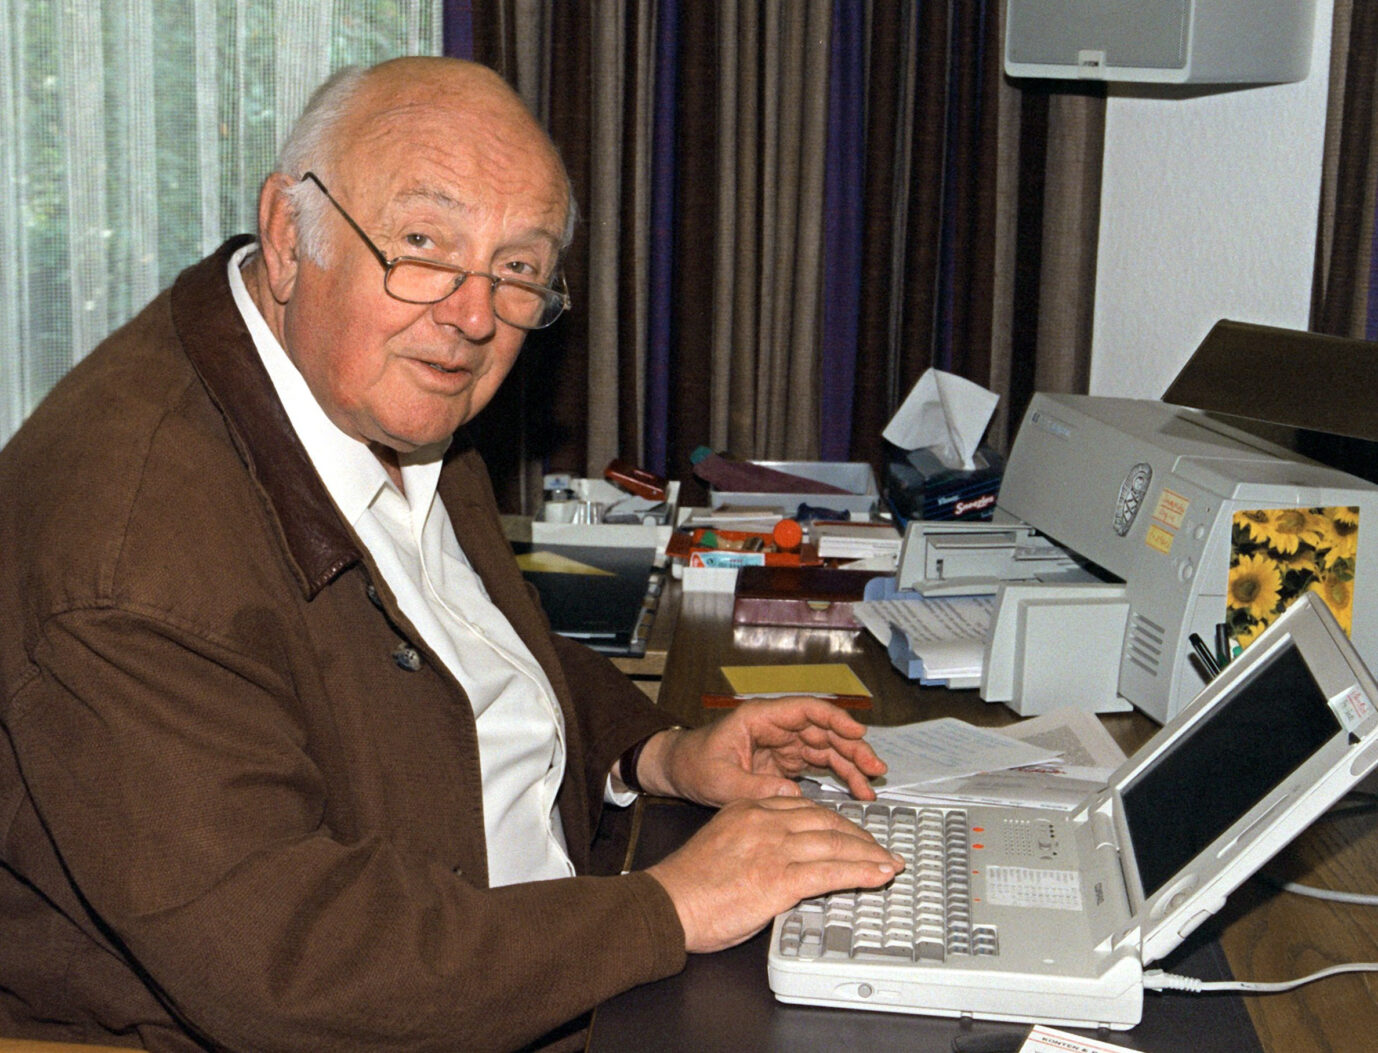 Schulumbenennung: Der Kinderbuchautor Otfried Preußler 1998 bei der Arbeit in seinem Haus in Haidholzen.